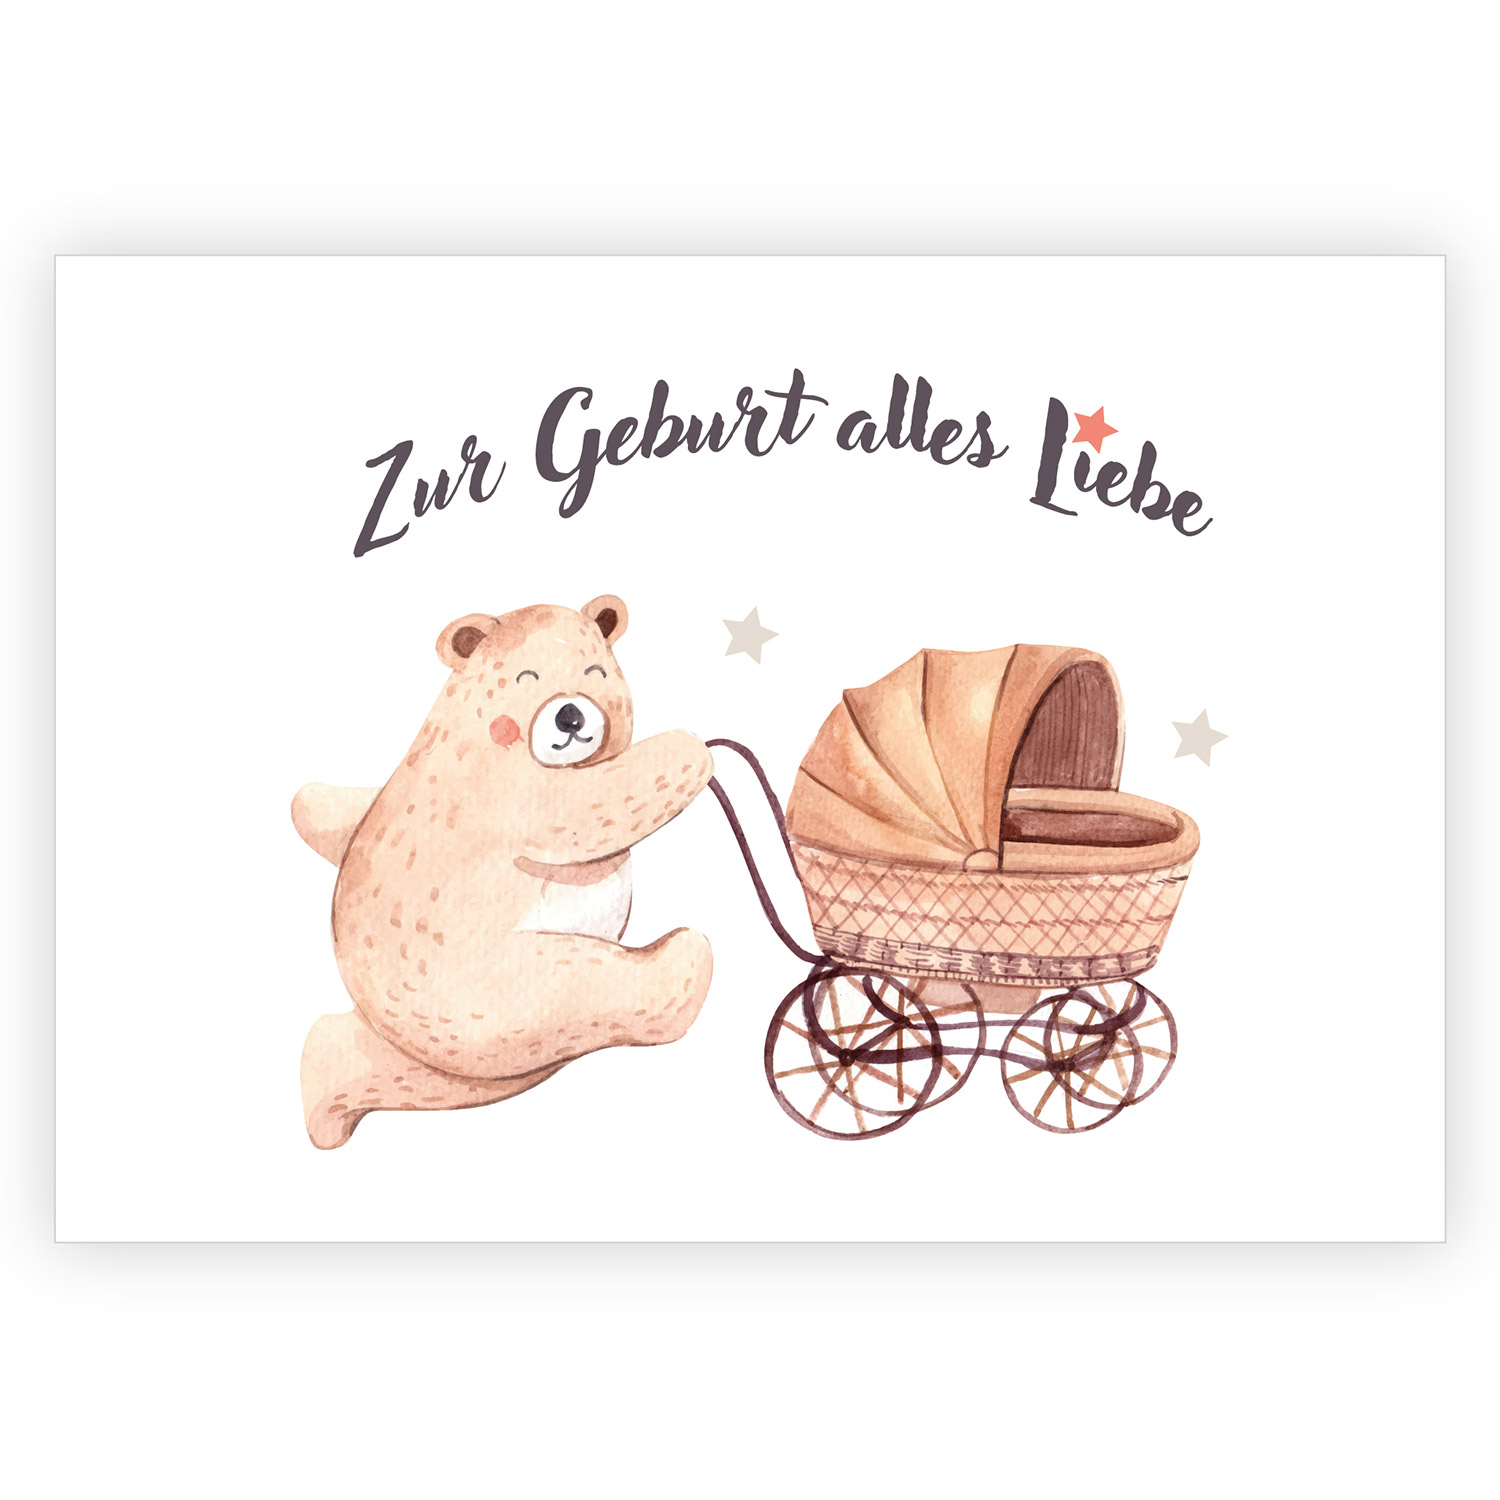 Süße Glückwunschkarte zur Geburt für die  Eltern mit Teddy Bär und Kinderwagen 1 nachhaltig produzierte Klappkarte  inklusive Umschlag made in germany von Kartenkaufrausch.de